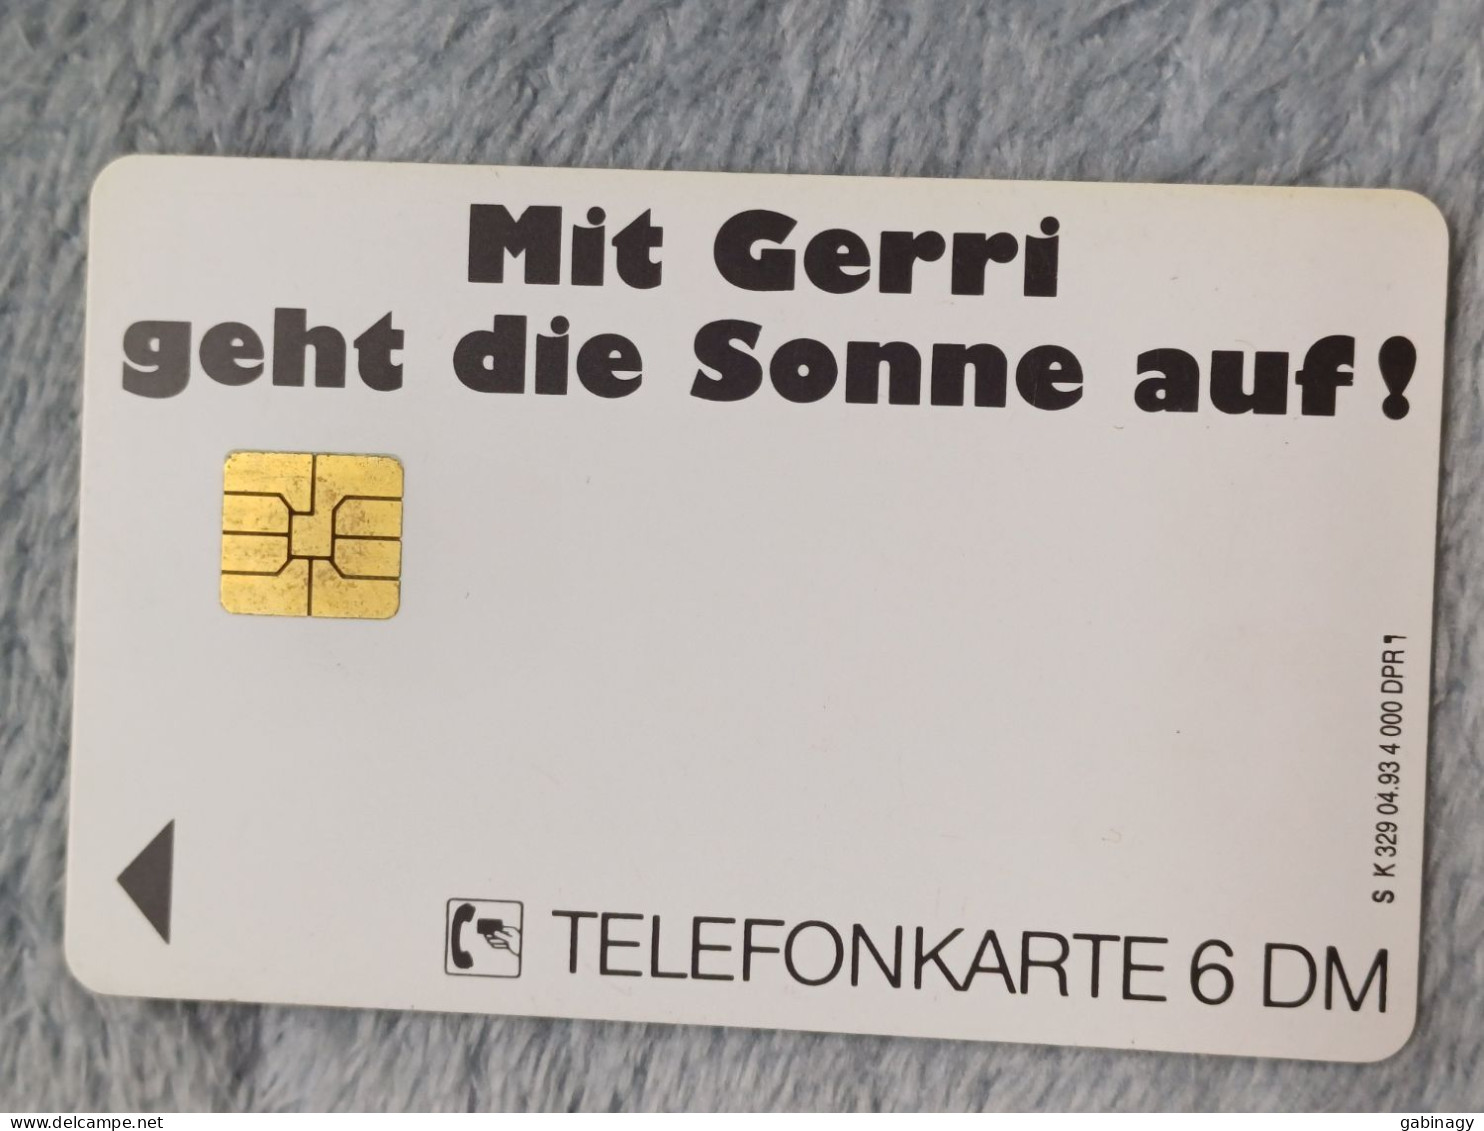 GERMANY-1220 - K 0329 - Gerri 2 - Mit Gerri Geht Die Sonne Auft - 4.000ex. - K-Series : Customers Sets